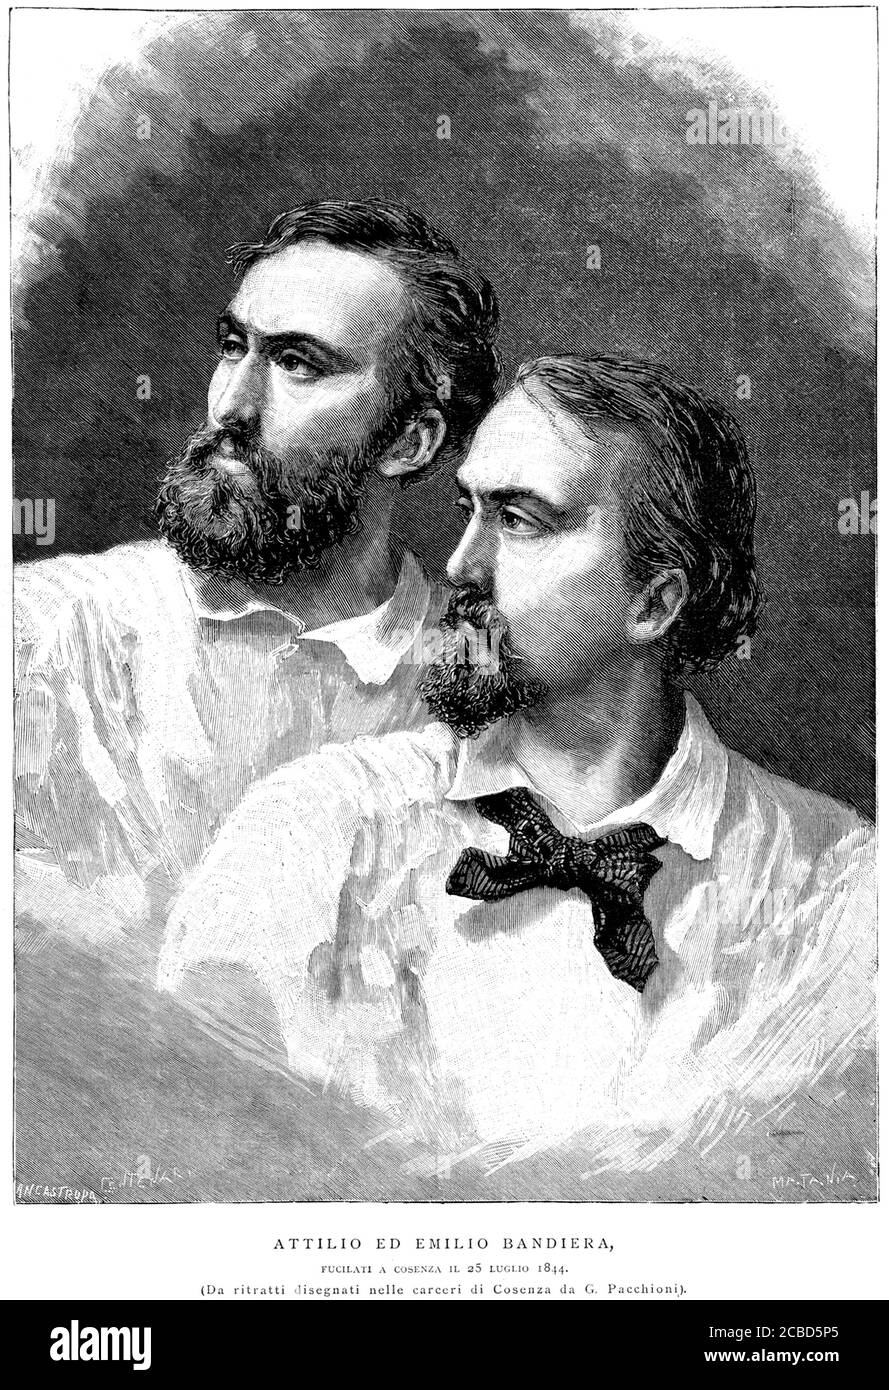 1844 , ITALY : The two italian patriots brothers ATTILIO ( 1810 - 1844 ) and EMILIO BANDIERA ( 1819 - 1844 ) together comndanned to death in Cosenza ( Calabria - South Italy ) the day 25 july 1844 . Engraved portraits by Matania from the original work by G. Pacchioni , pubblishe in 1892 . - FRATELLI - Unità d' ITALIA - RISORGIMENTO  -  ITALIA - FOTO STORICHE - HISTORY - illustration - illustrazione - engraving - incisione - beard - barba - patriota - patrioti - eroi - eroismo - partriottismo - heros - hero ----  Archivio GBB Stock Photo